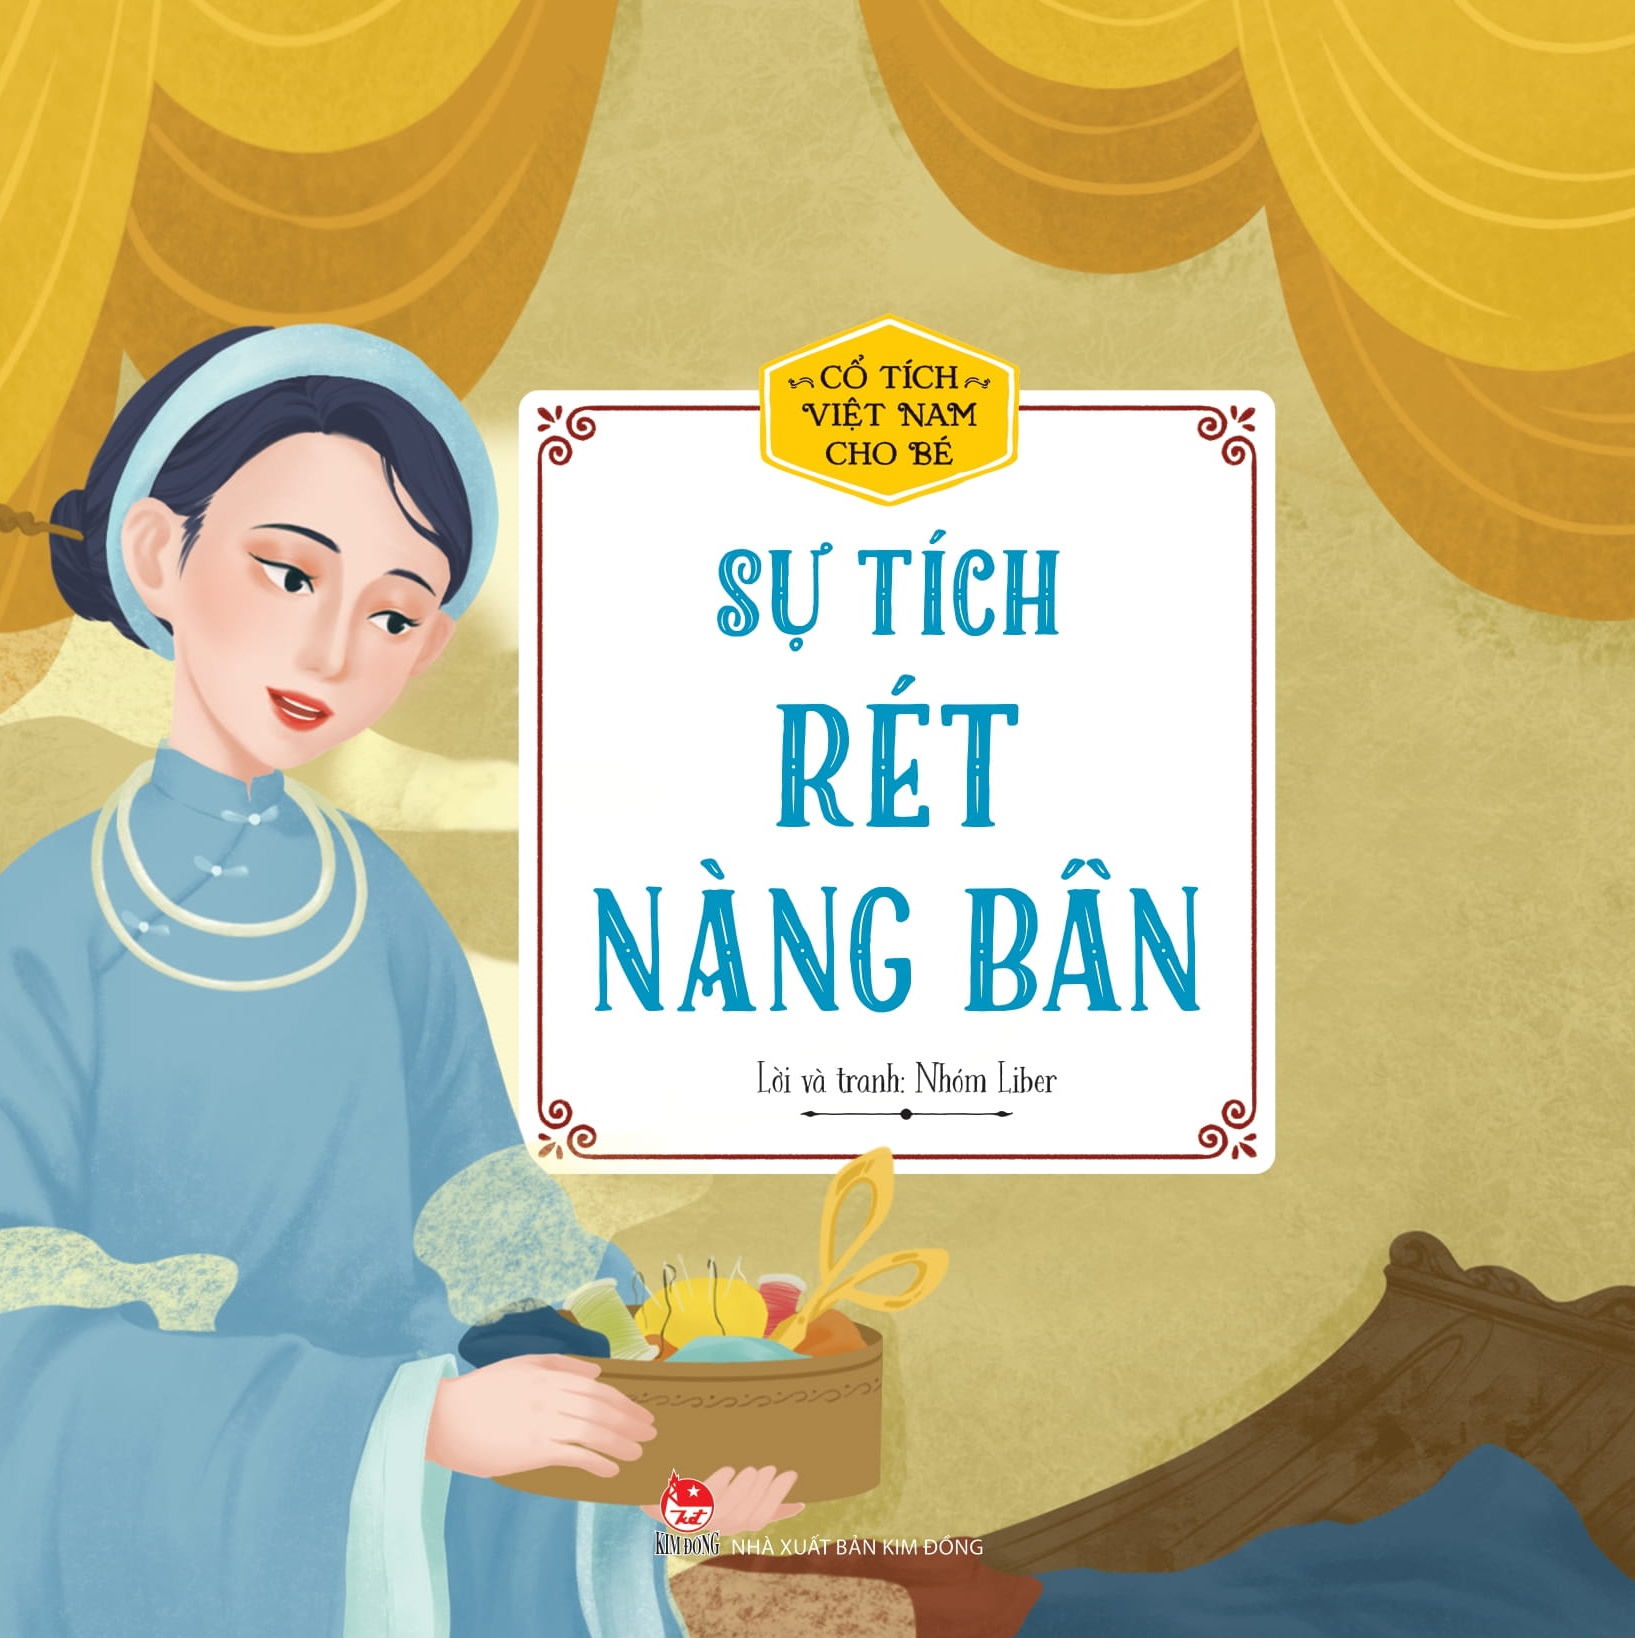 Cổ Tích Việt Nam Cho Bé: Sự Tích Rét Nàng Bân